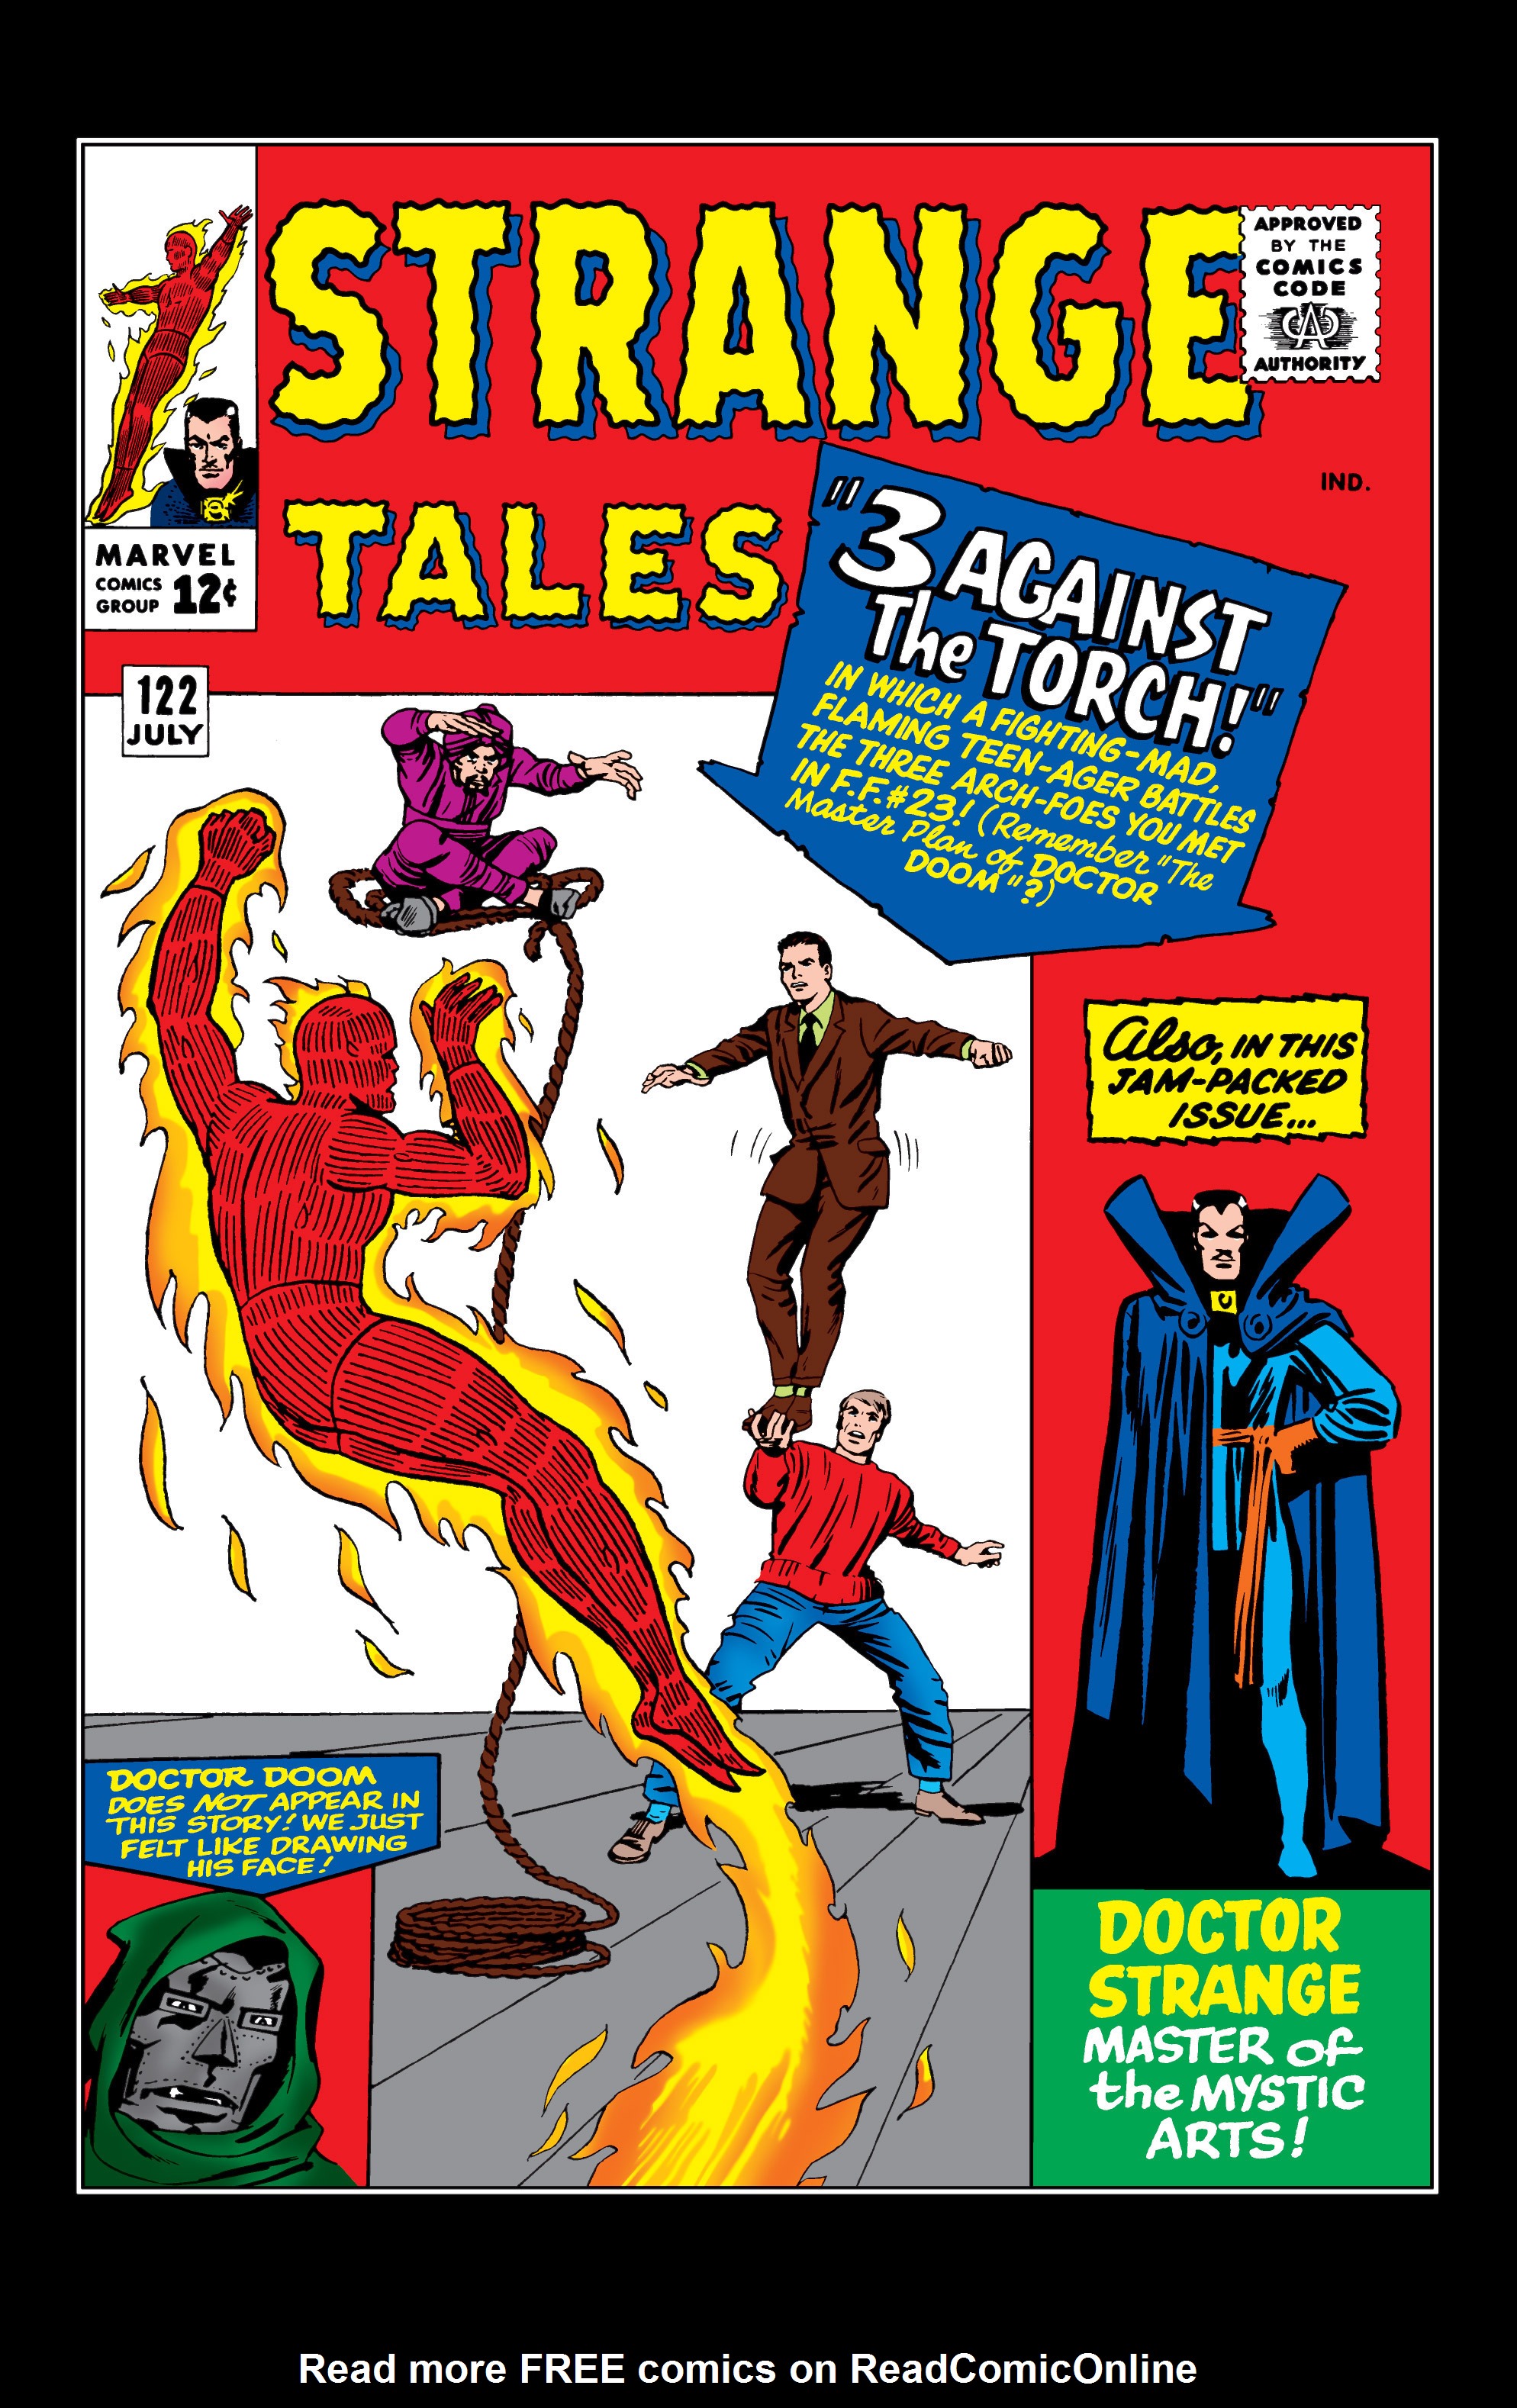 Read online Marvel Masterworks: Doctor Strange comic -  Issue # TPB 1 - 89